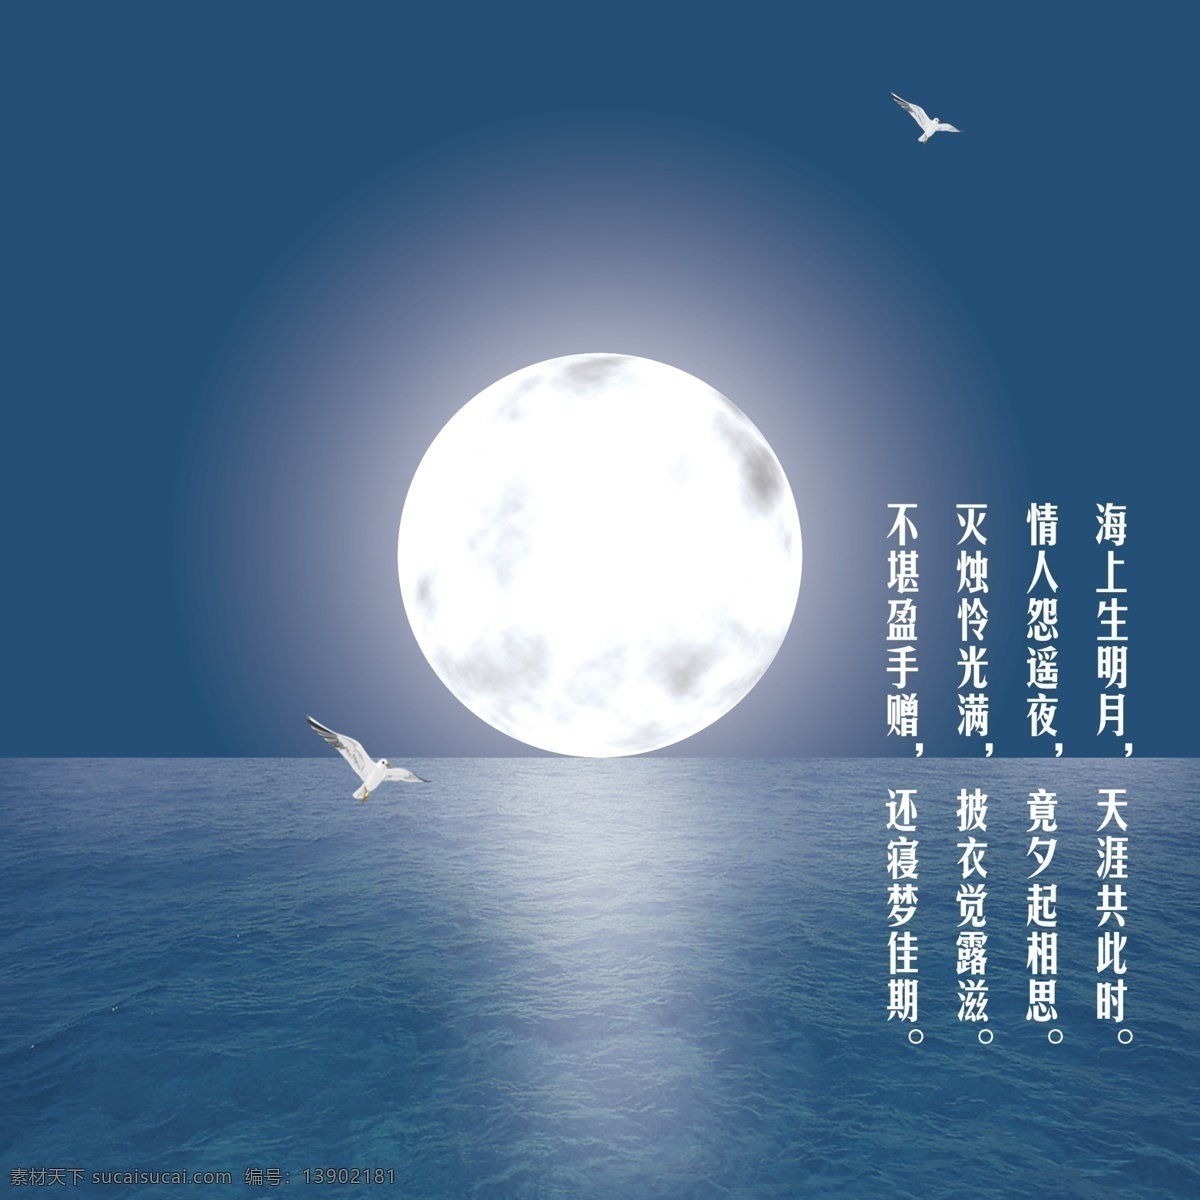 海上生明月 月亮 海鸥 海面 夜景 月光 广告设计模板 风景 分层 小鸟 海水 背景素材 源文件